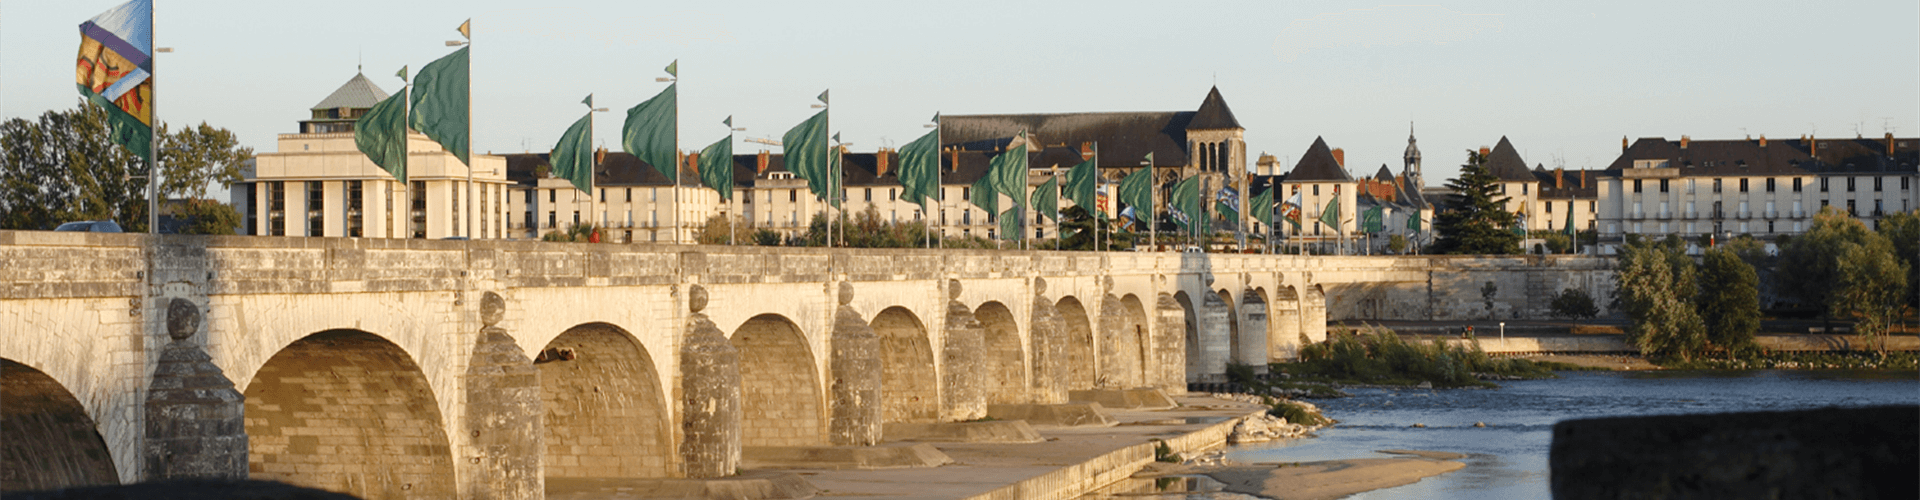 Steden en dorpen in Centre, midden Frankrijk: de brug bij Tours